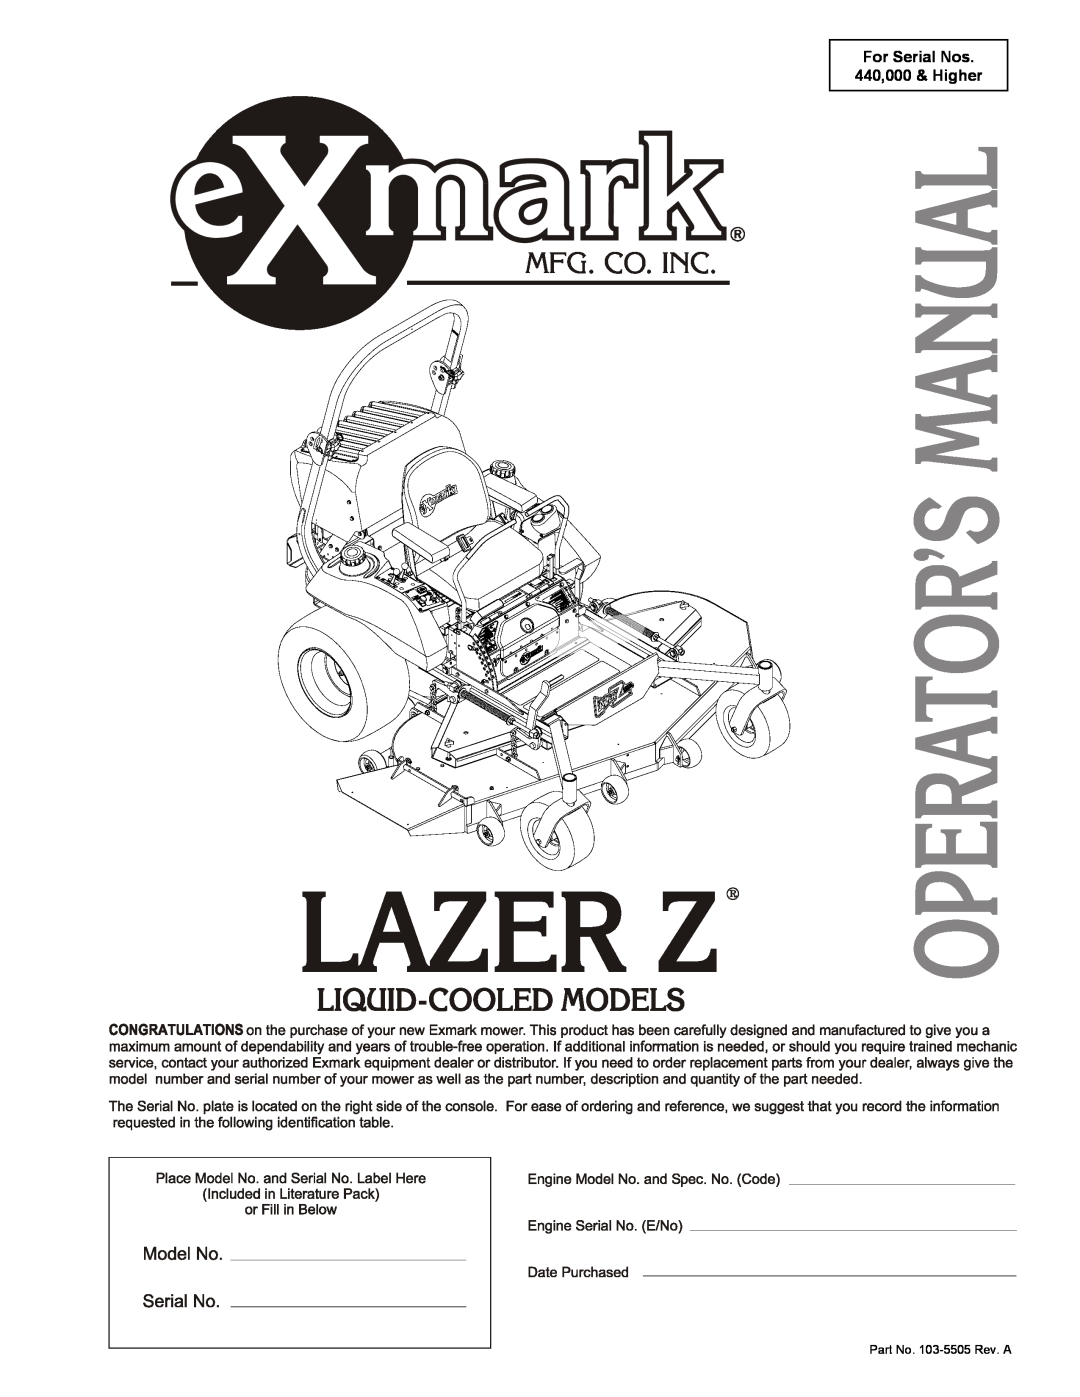 Exmark Lazer HP manual For Serial Nos 440,000 & Higher, Part No. 103-5505 Rev. A 